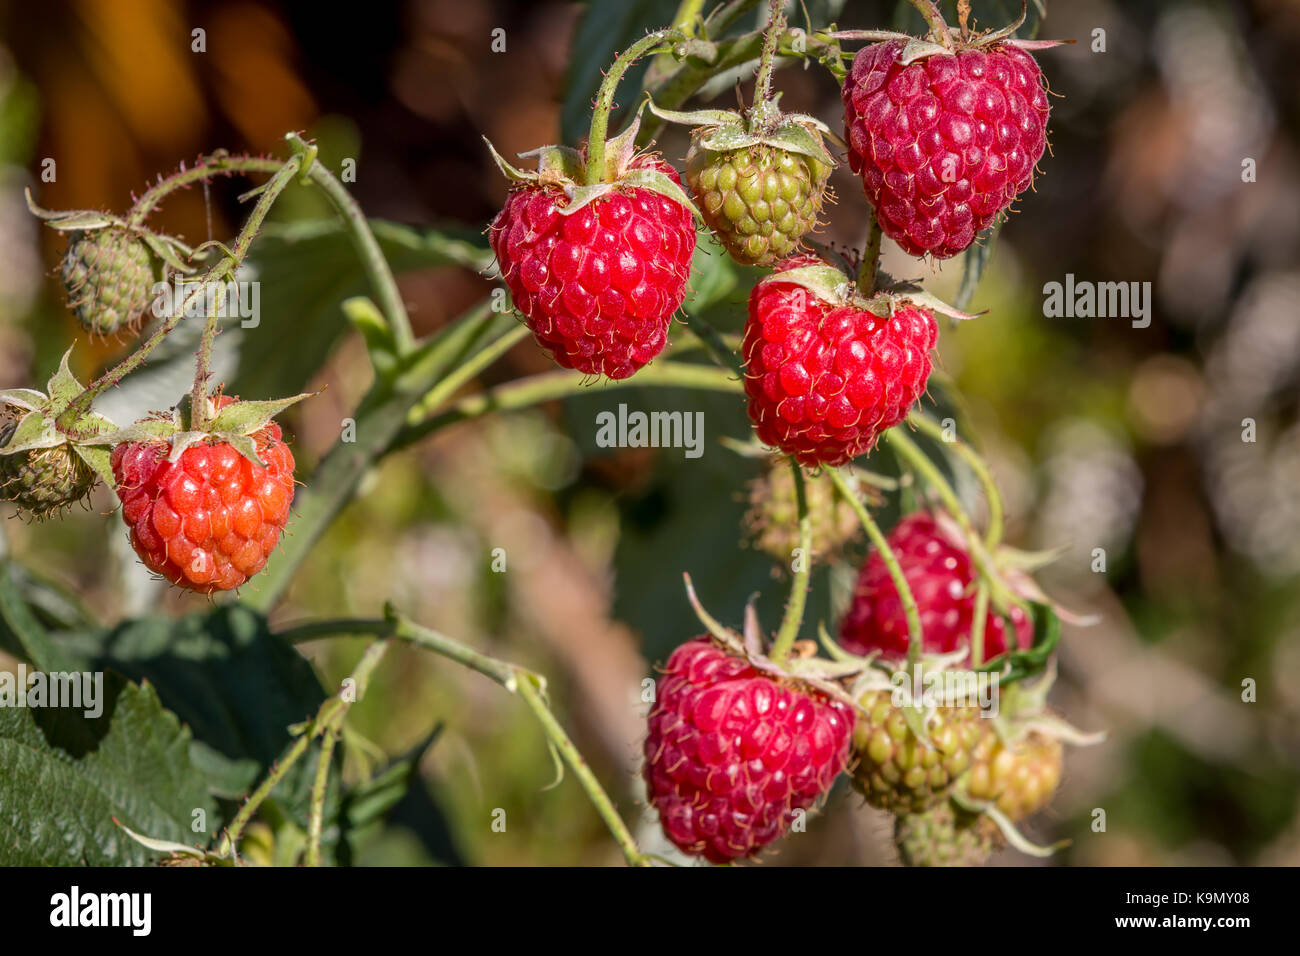 Ripe organic raspberries Stock Photo